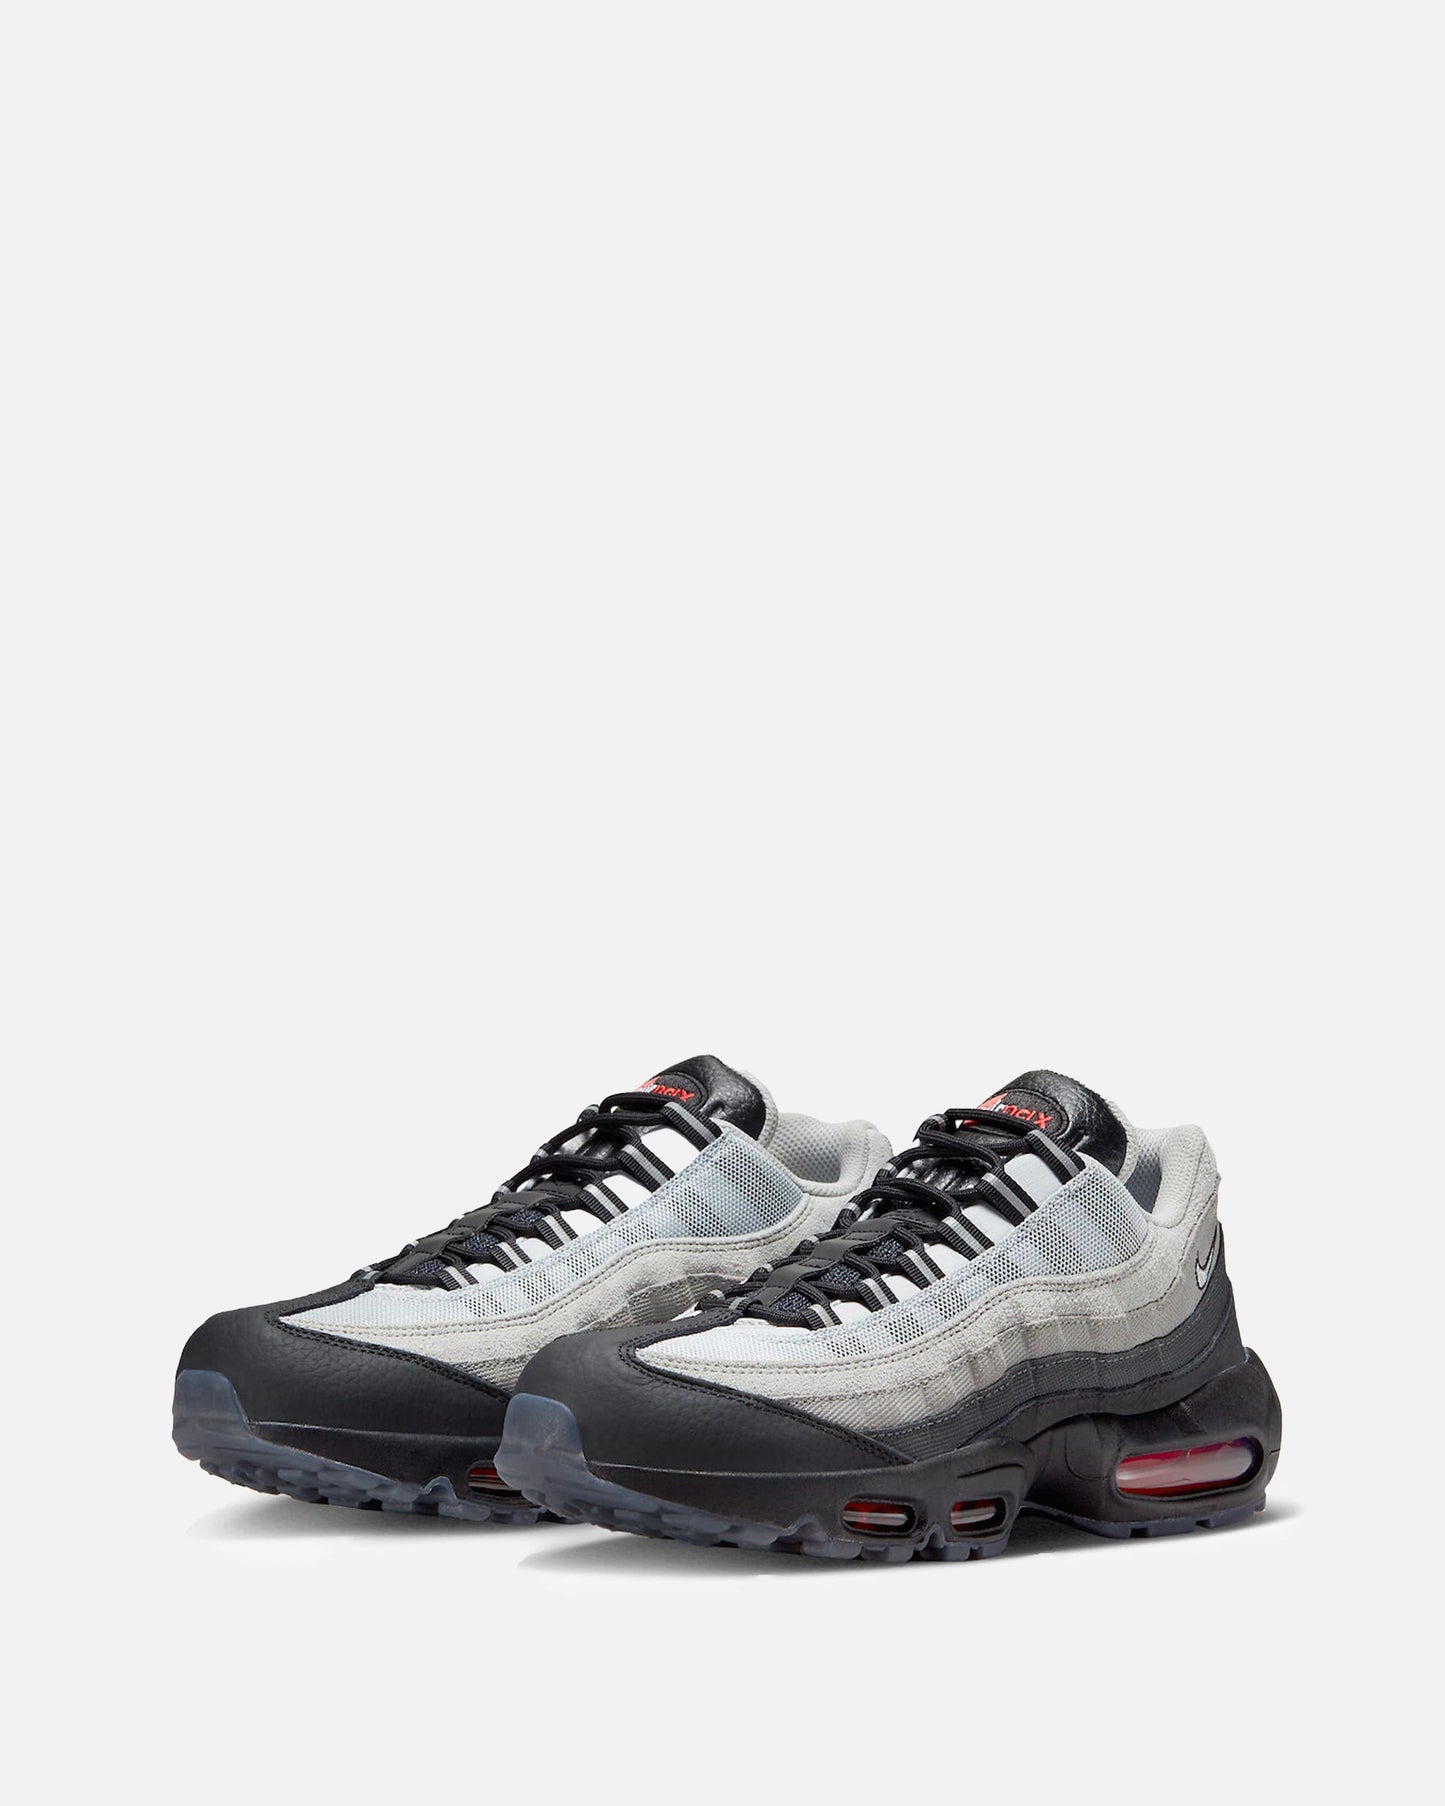 Nike Men's Sneakers Air Max 95 'Black/Pure Platinum'